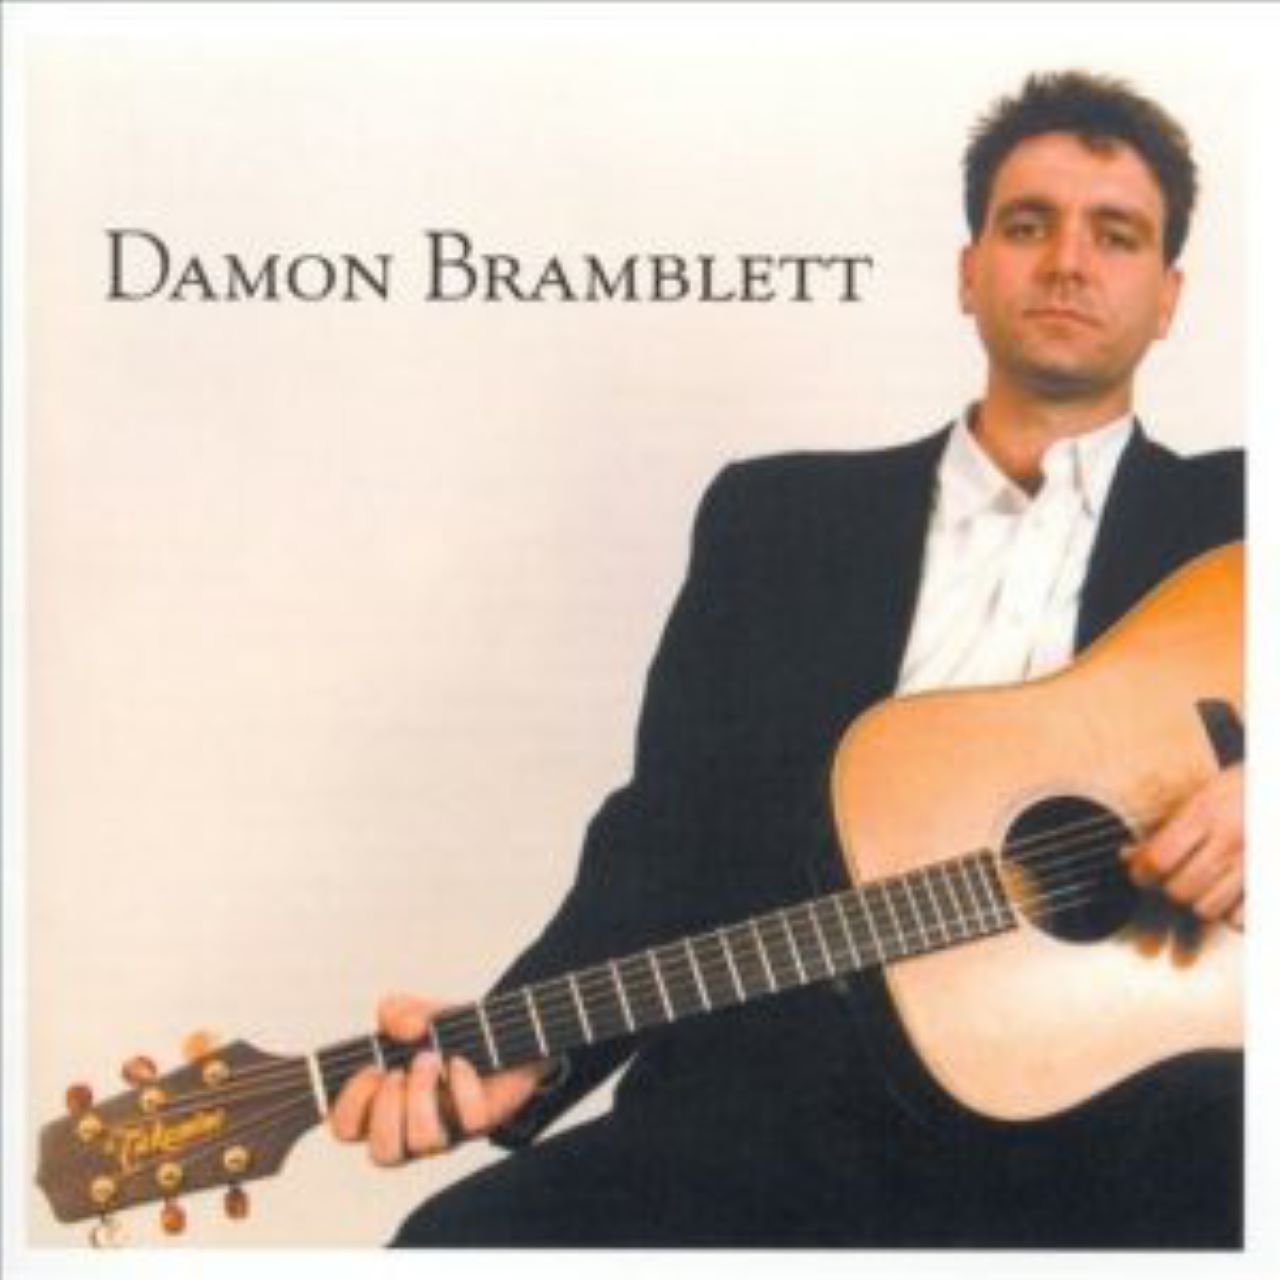 Damon Bramblett - Damon Bramblett cover album